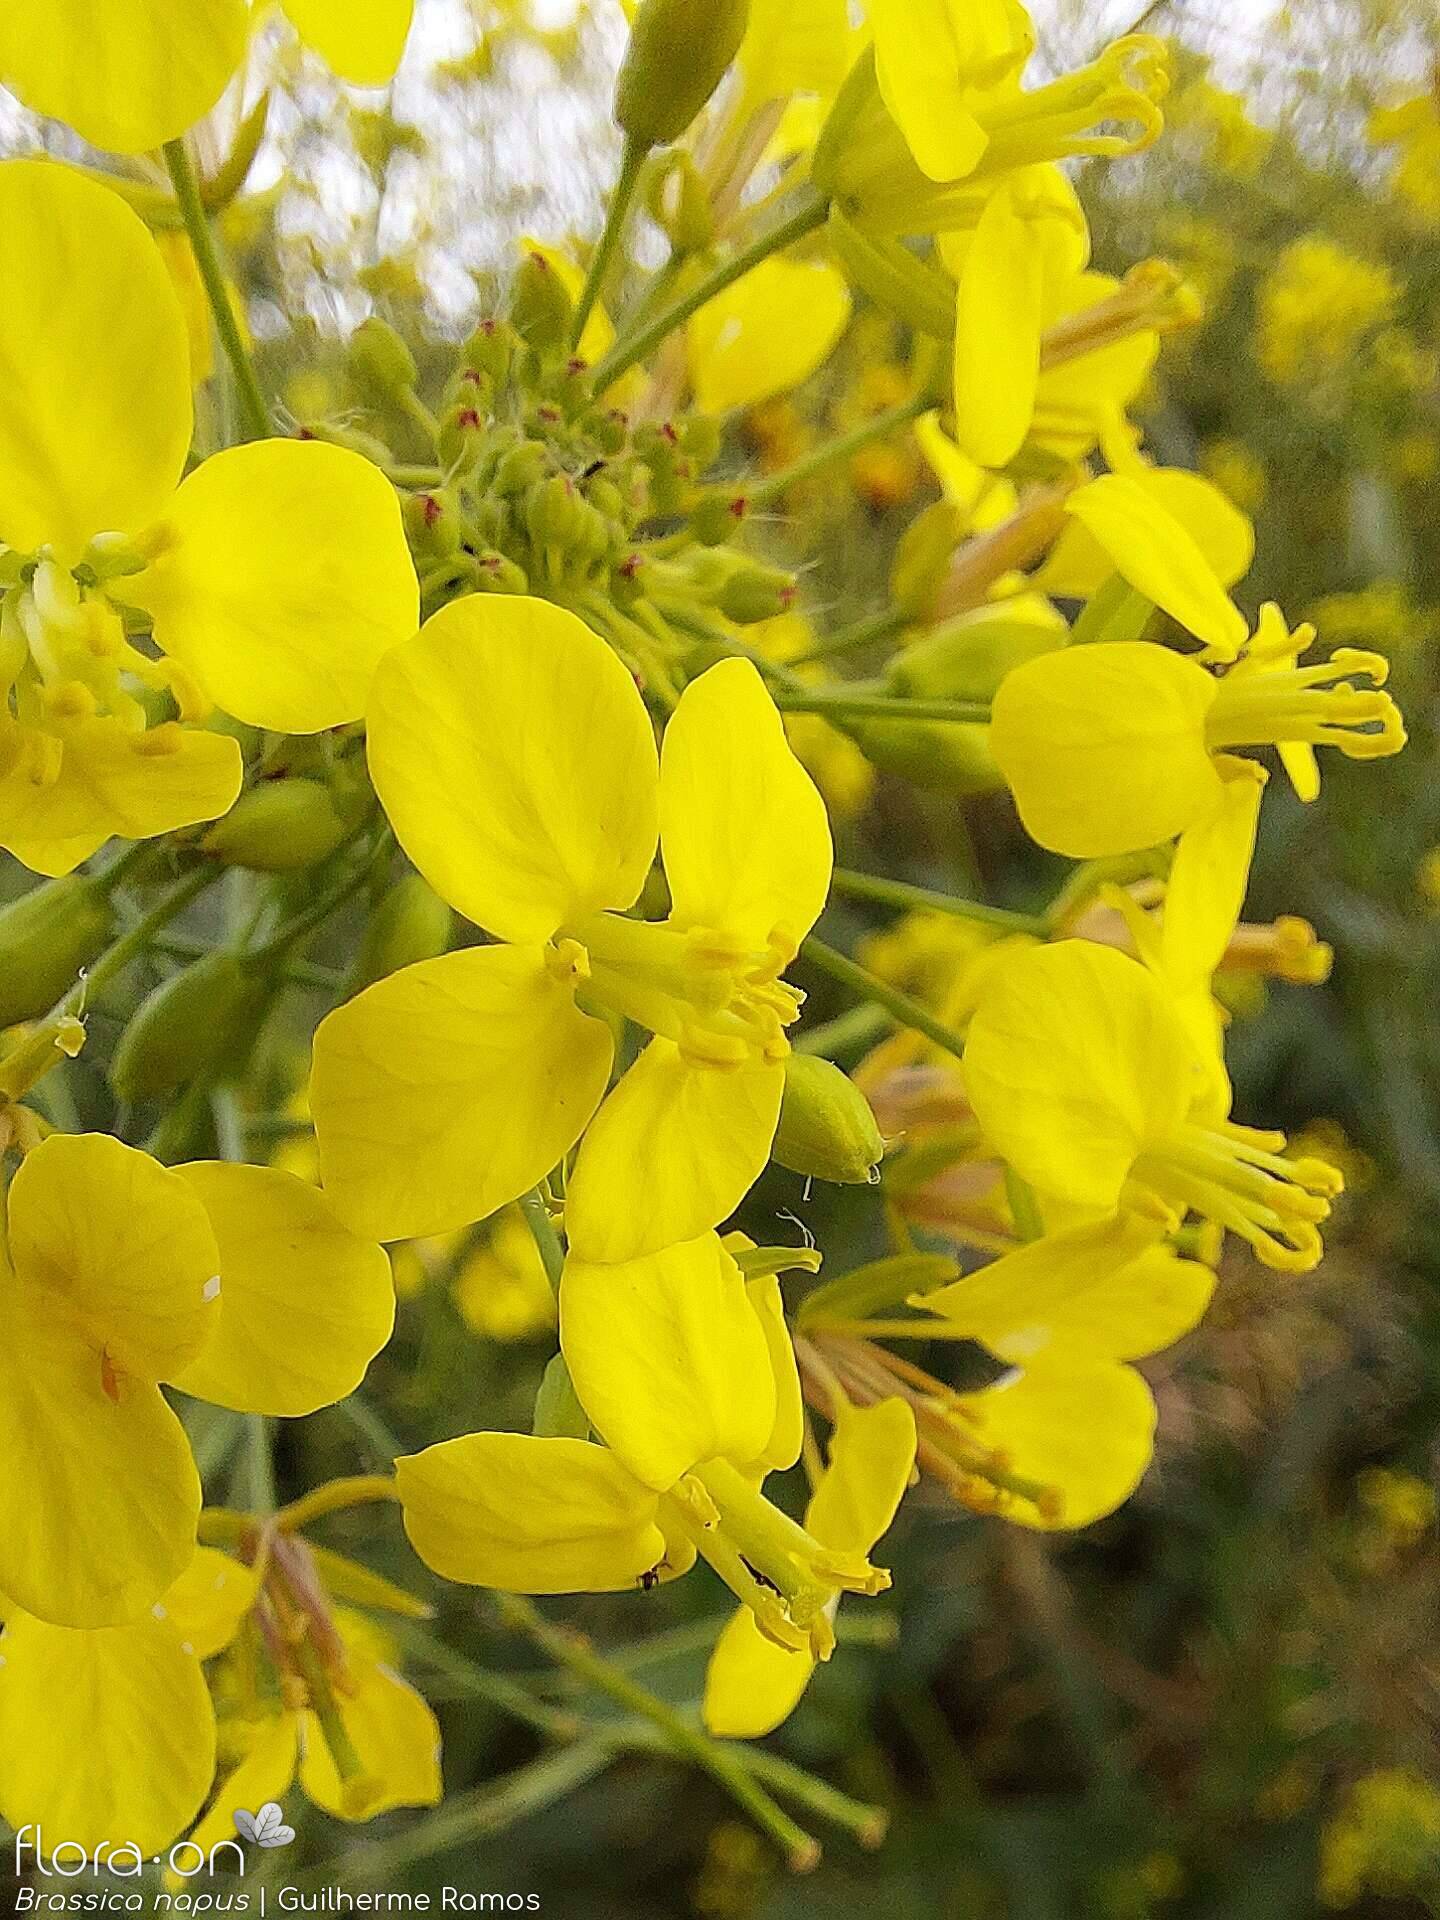 Brassica napus - Flor (close-up) | Guilherme Ramos; CC BY-NC 4.0